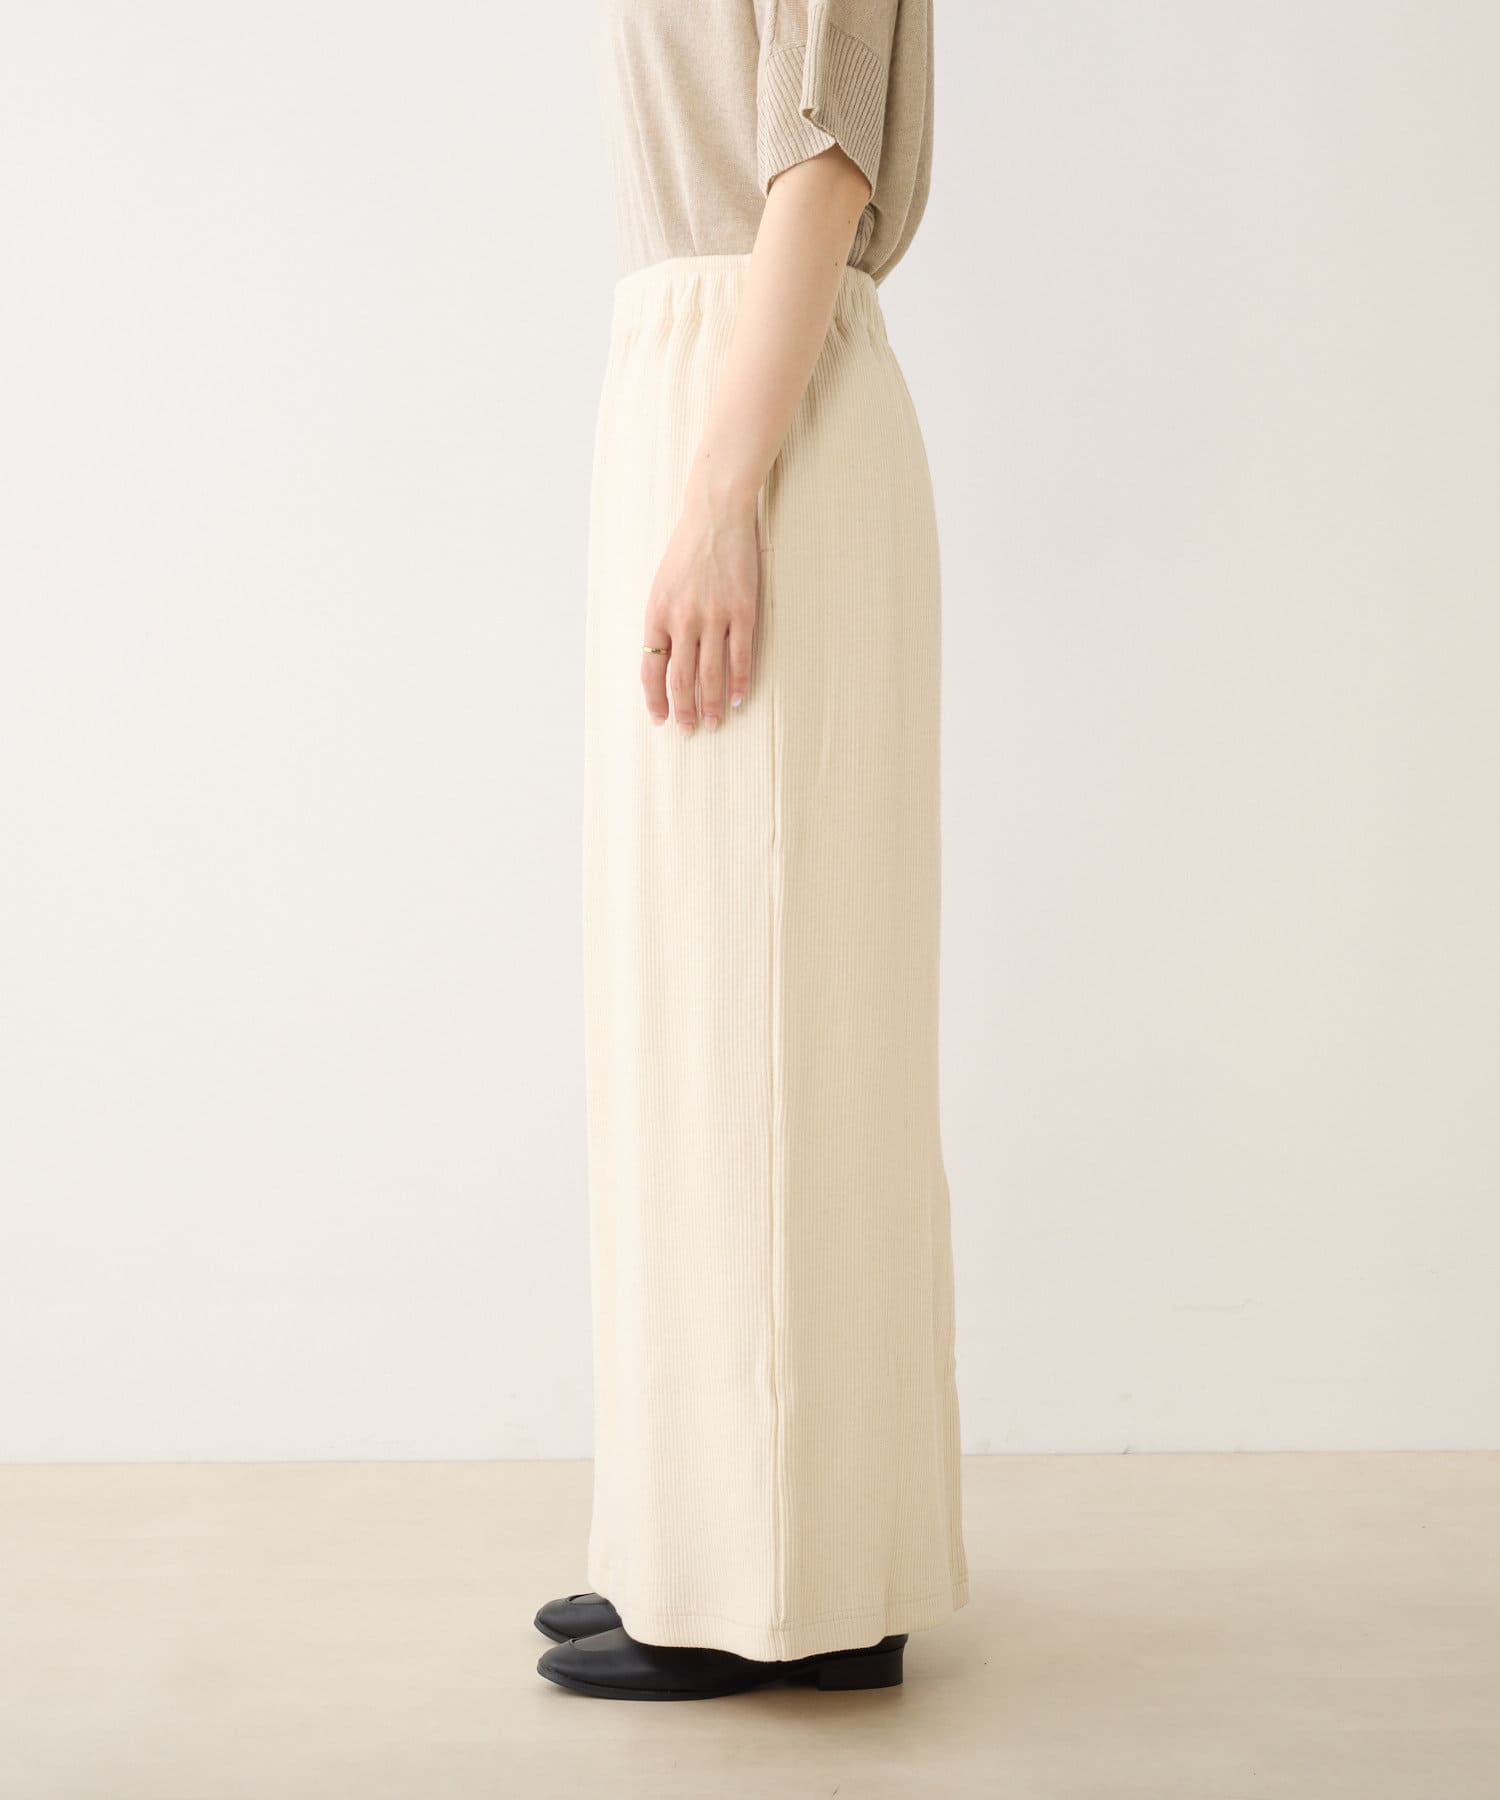 日本販売店 リブナロー ミディスカート - スカート